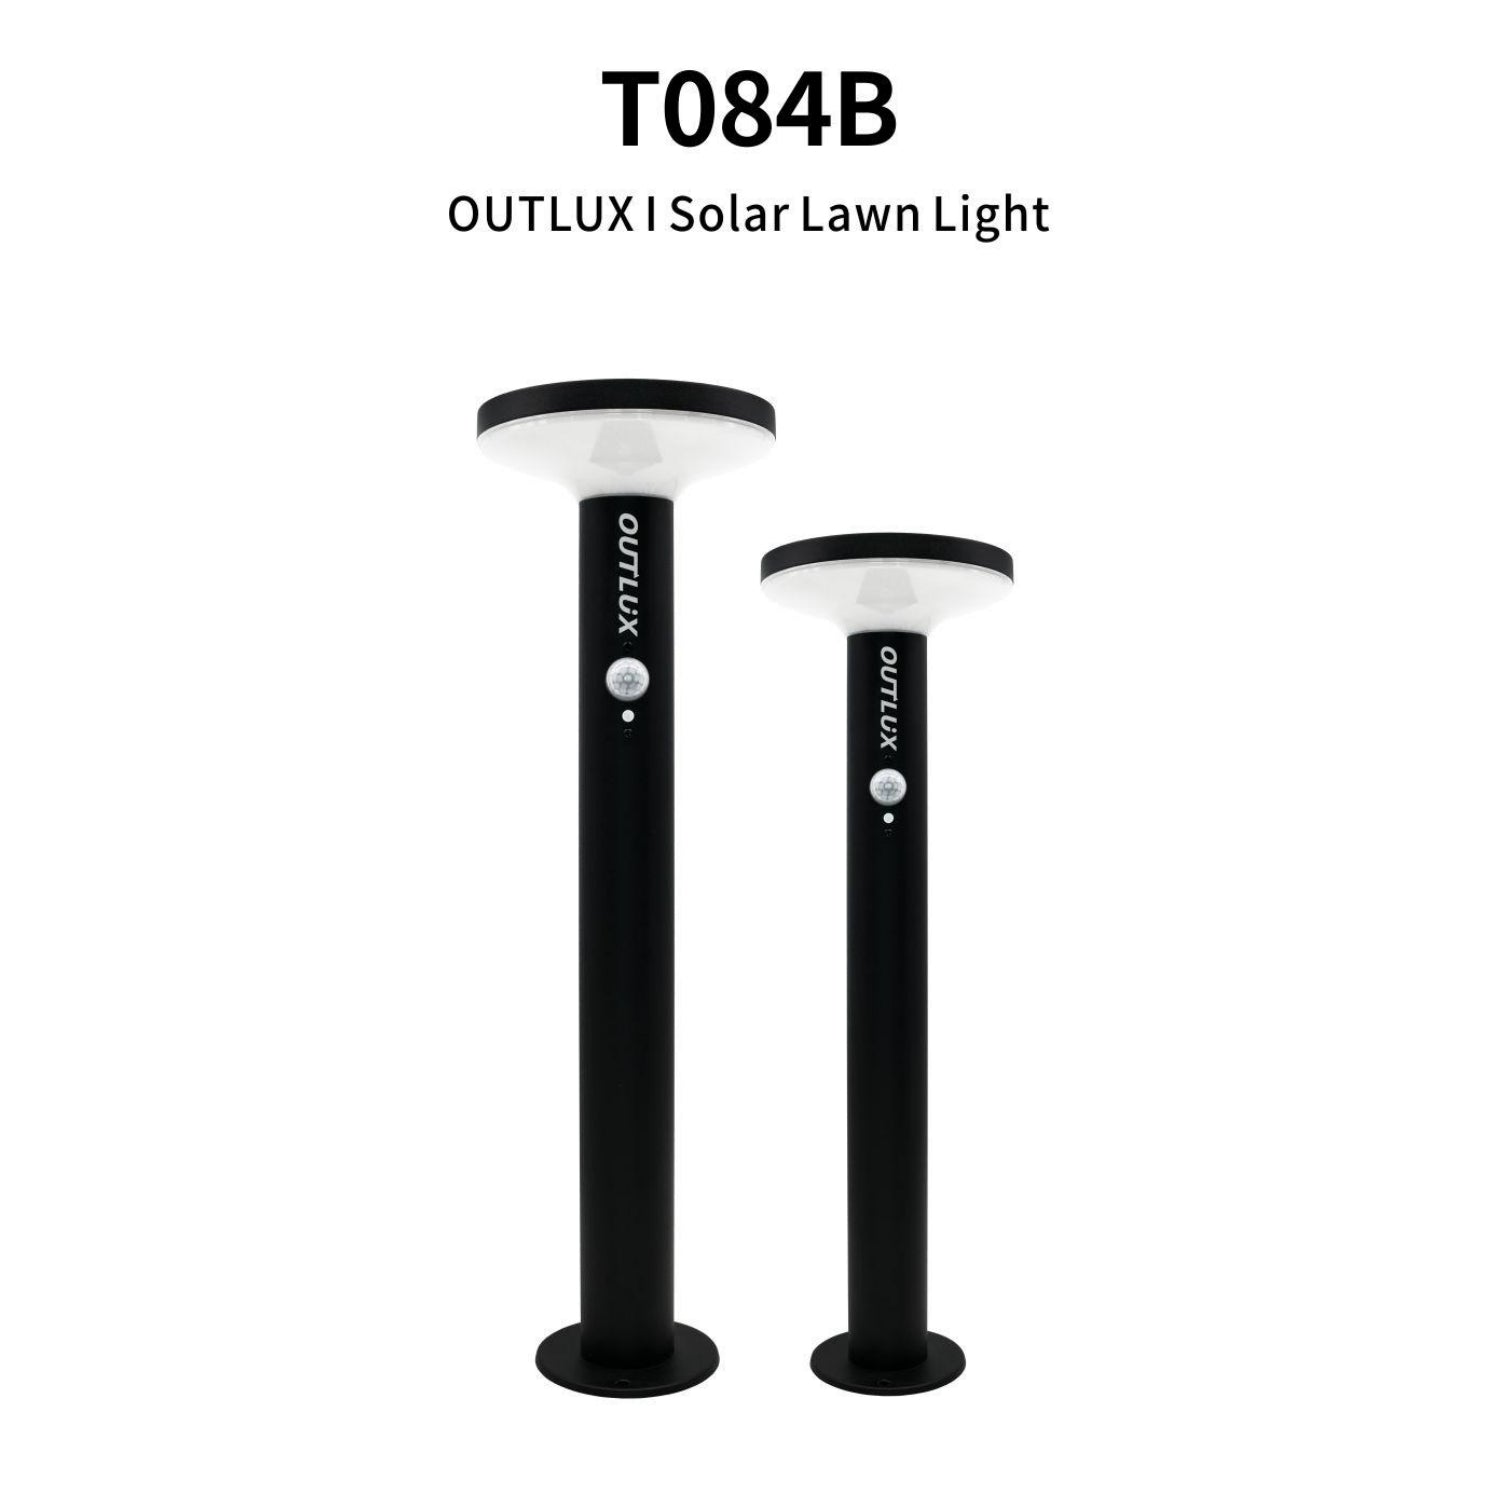 Outlux Solar Garden Lights -T084B